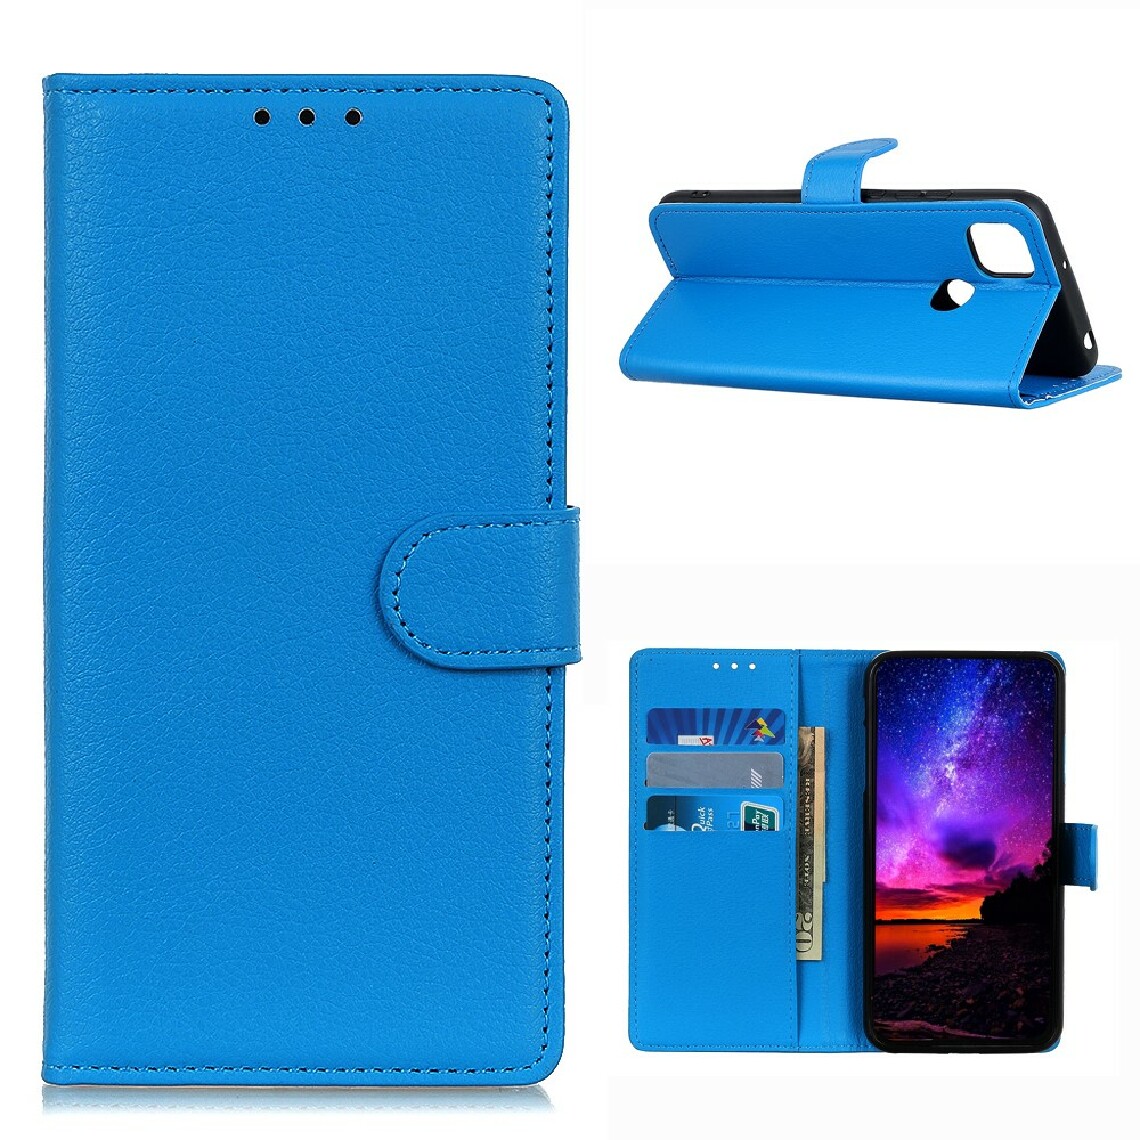 Other - Etui en PU texture de litchi classique bleu pour votre Motorola Moto G 5G - Coque, étui smartphone